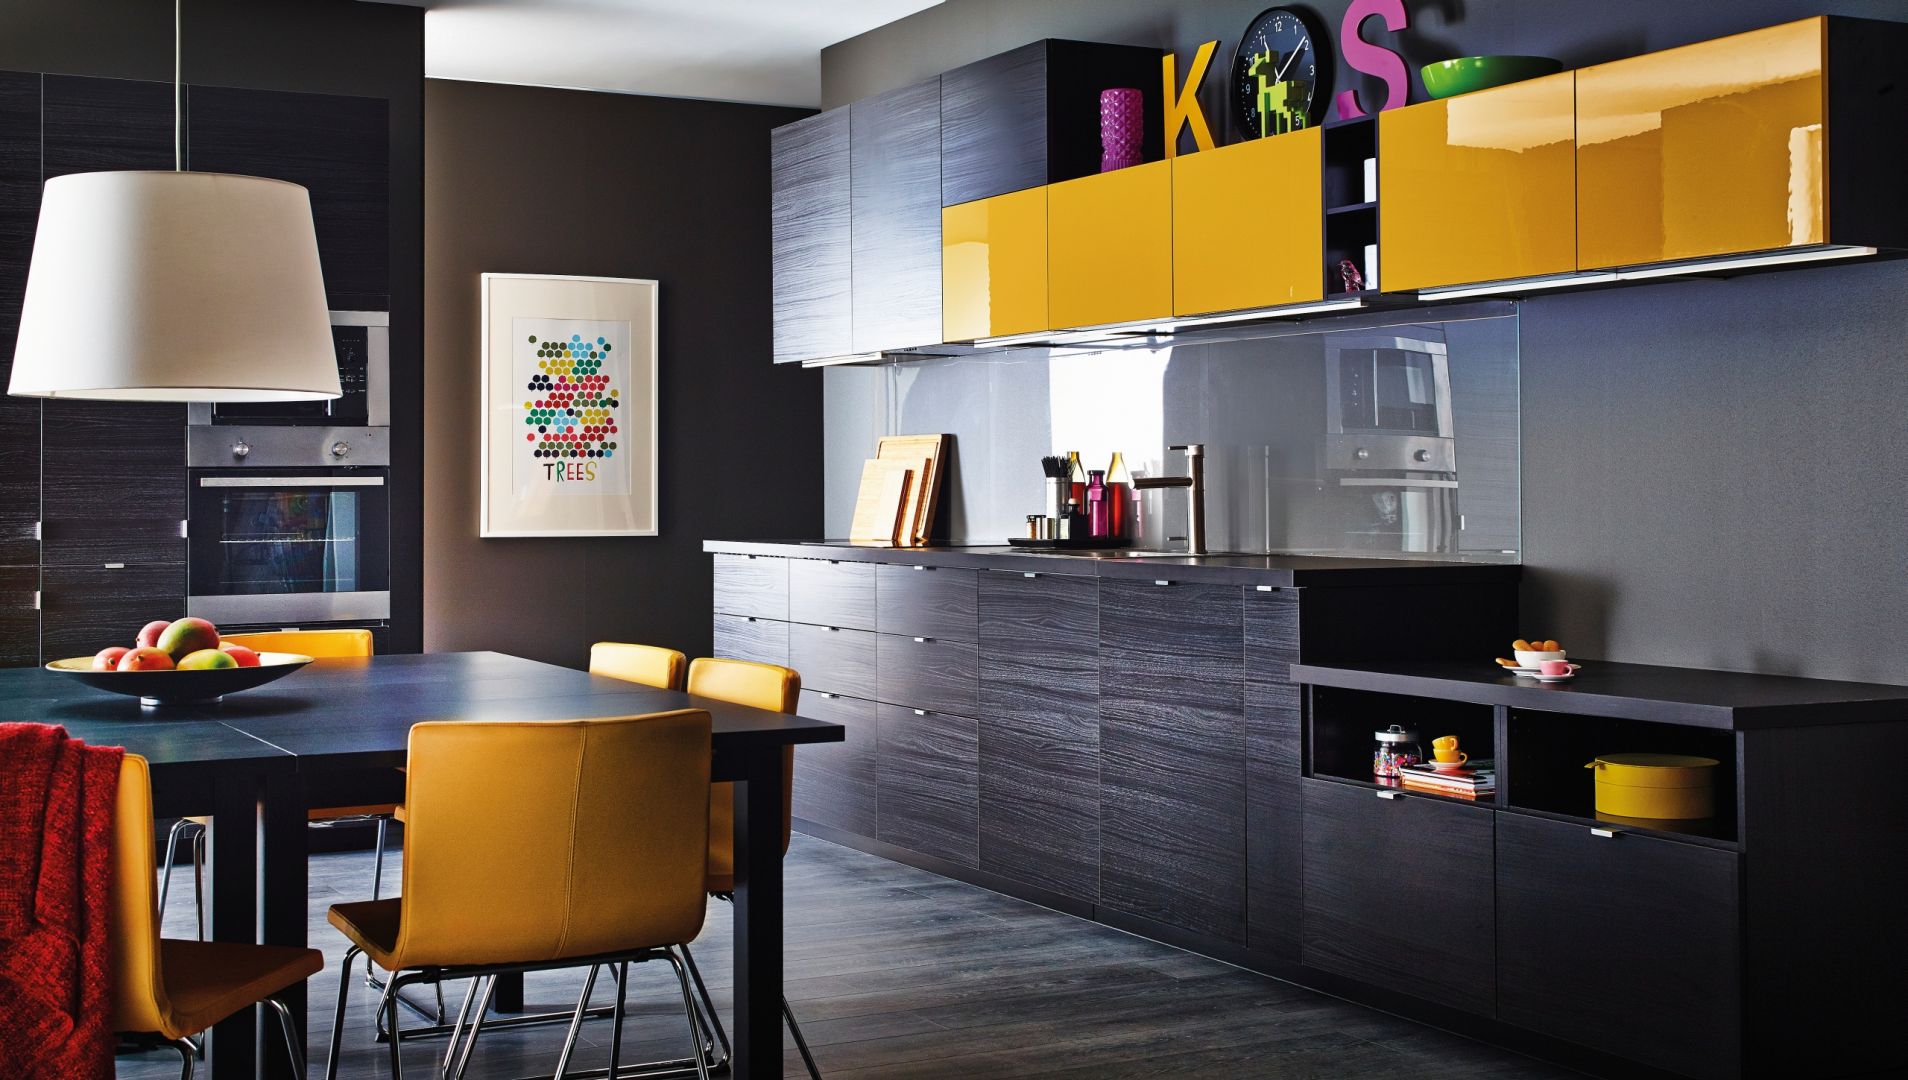 Na zdjęciu: kuchnia Metod firmy IKEA; ściana wykończona przezroczystym szkłem podkreśla ciekawą kolorystykę mebli – imitującą czarne drewno oraz żółty w połysku. Fot. IKEA.